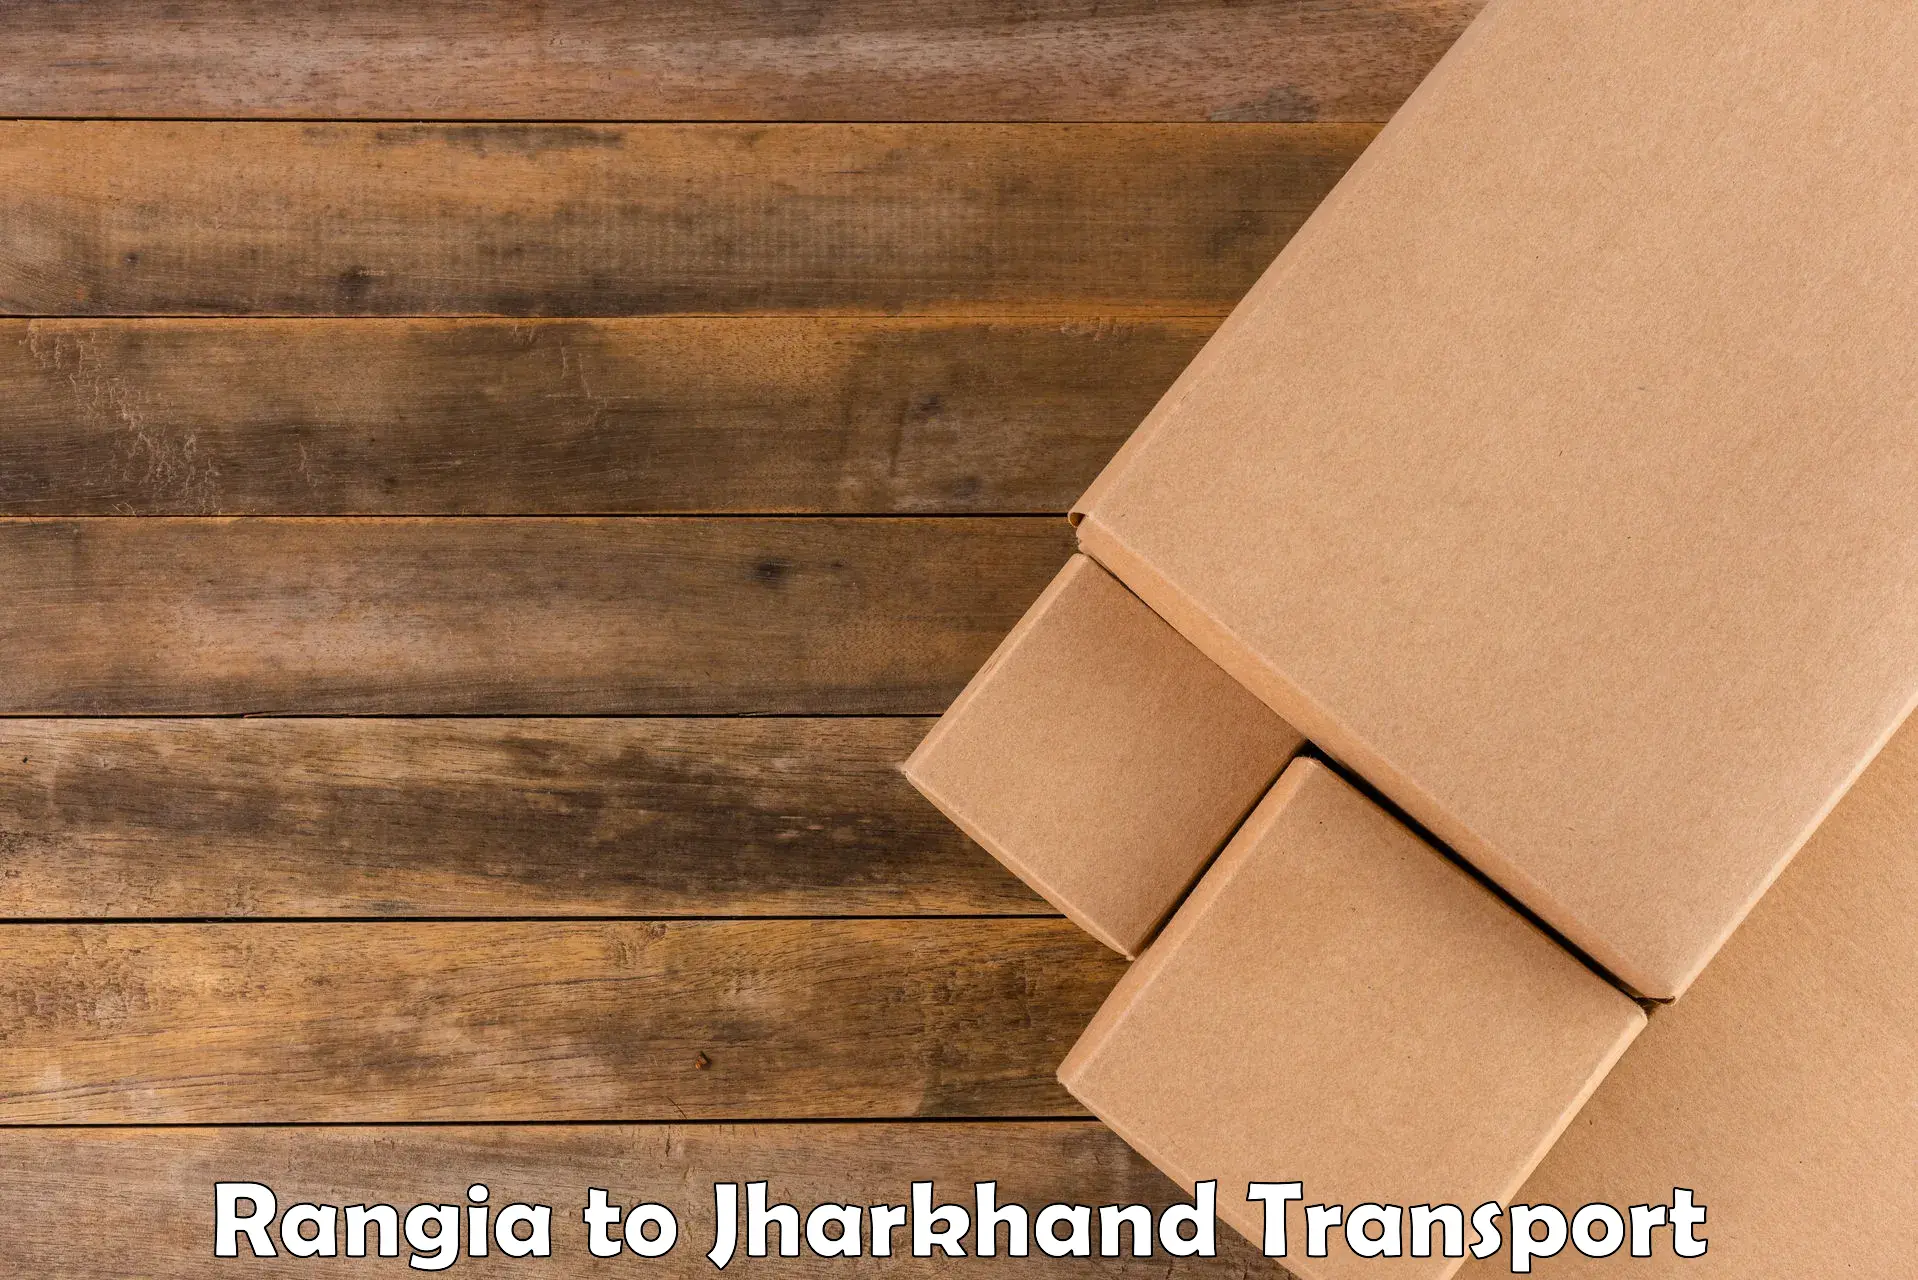 Daily transport service Rangia to Mahagama